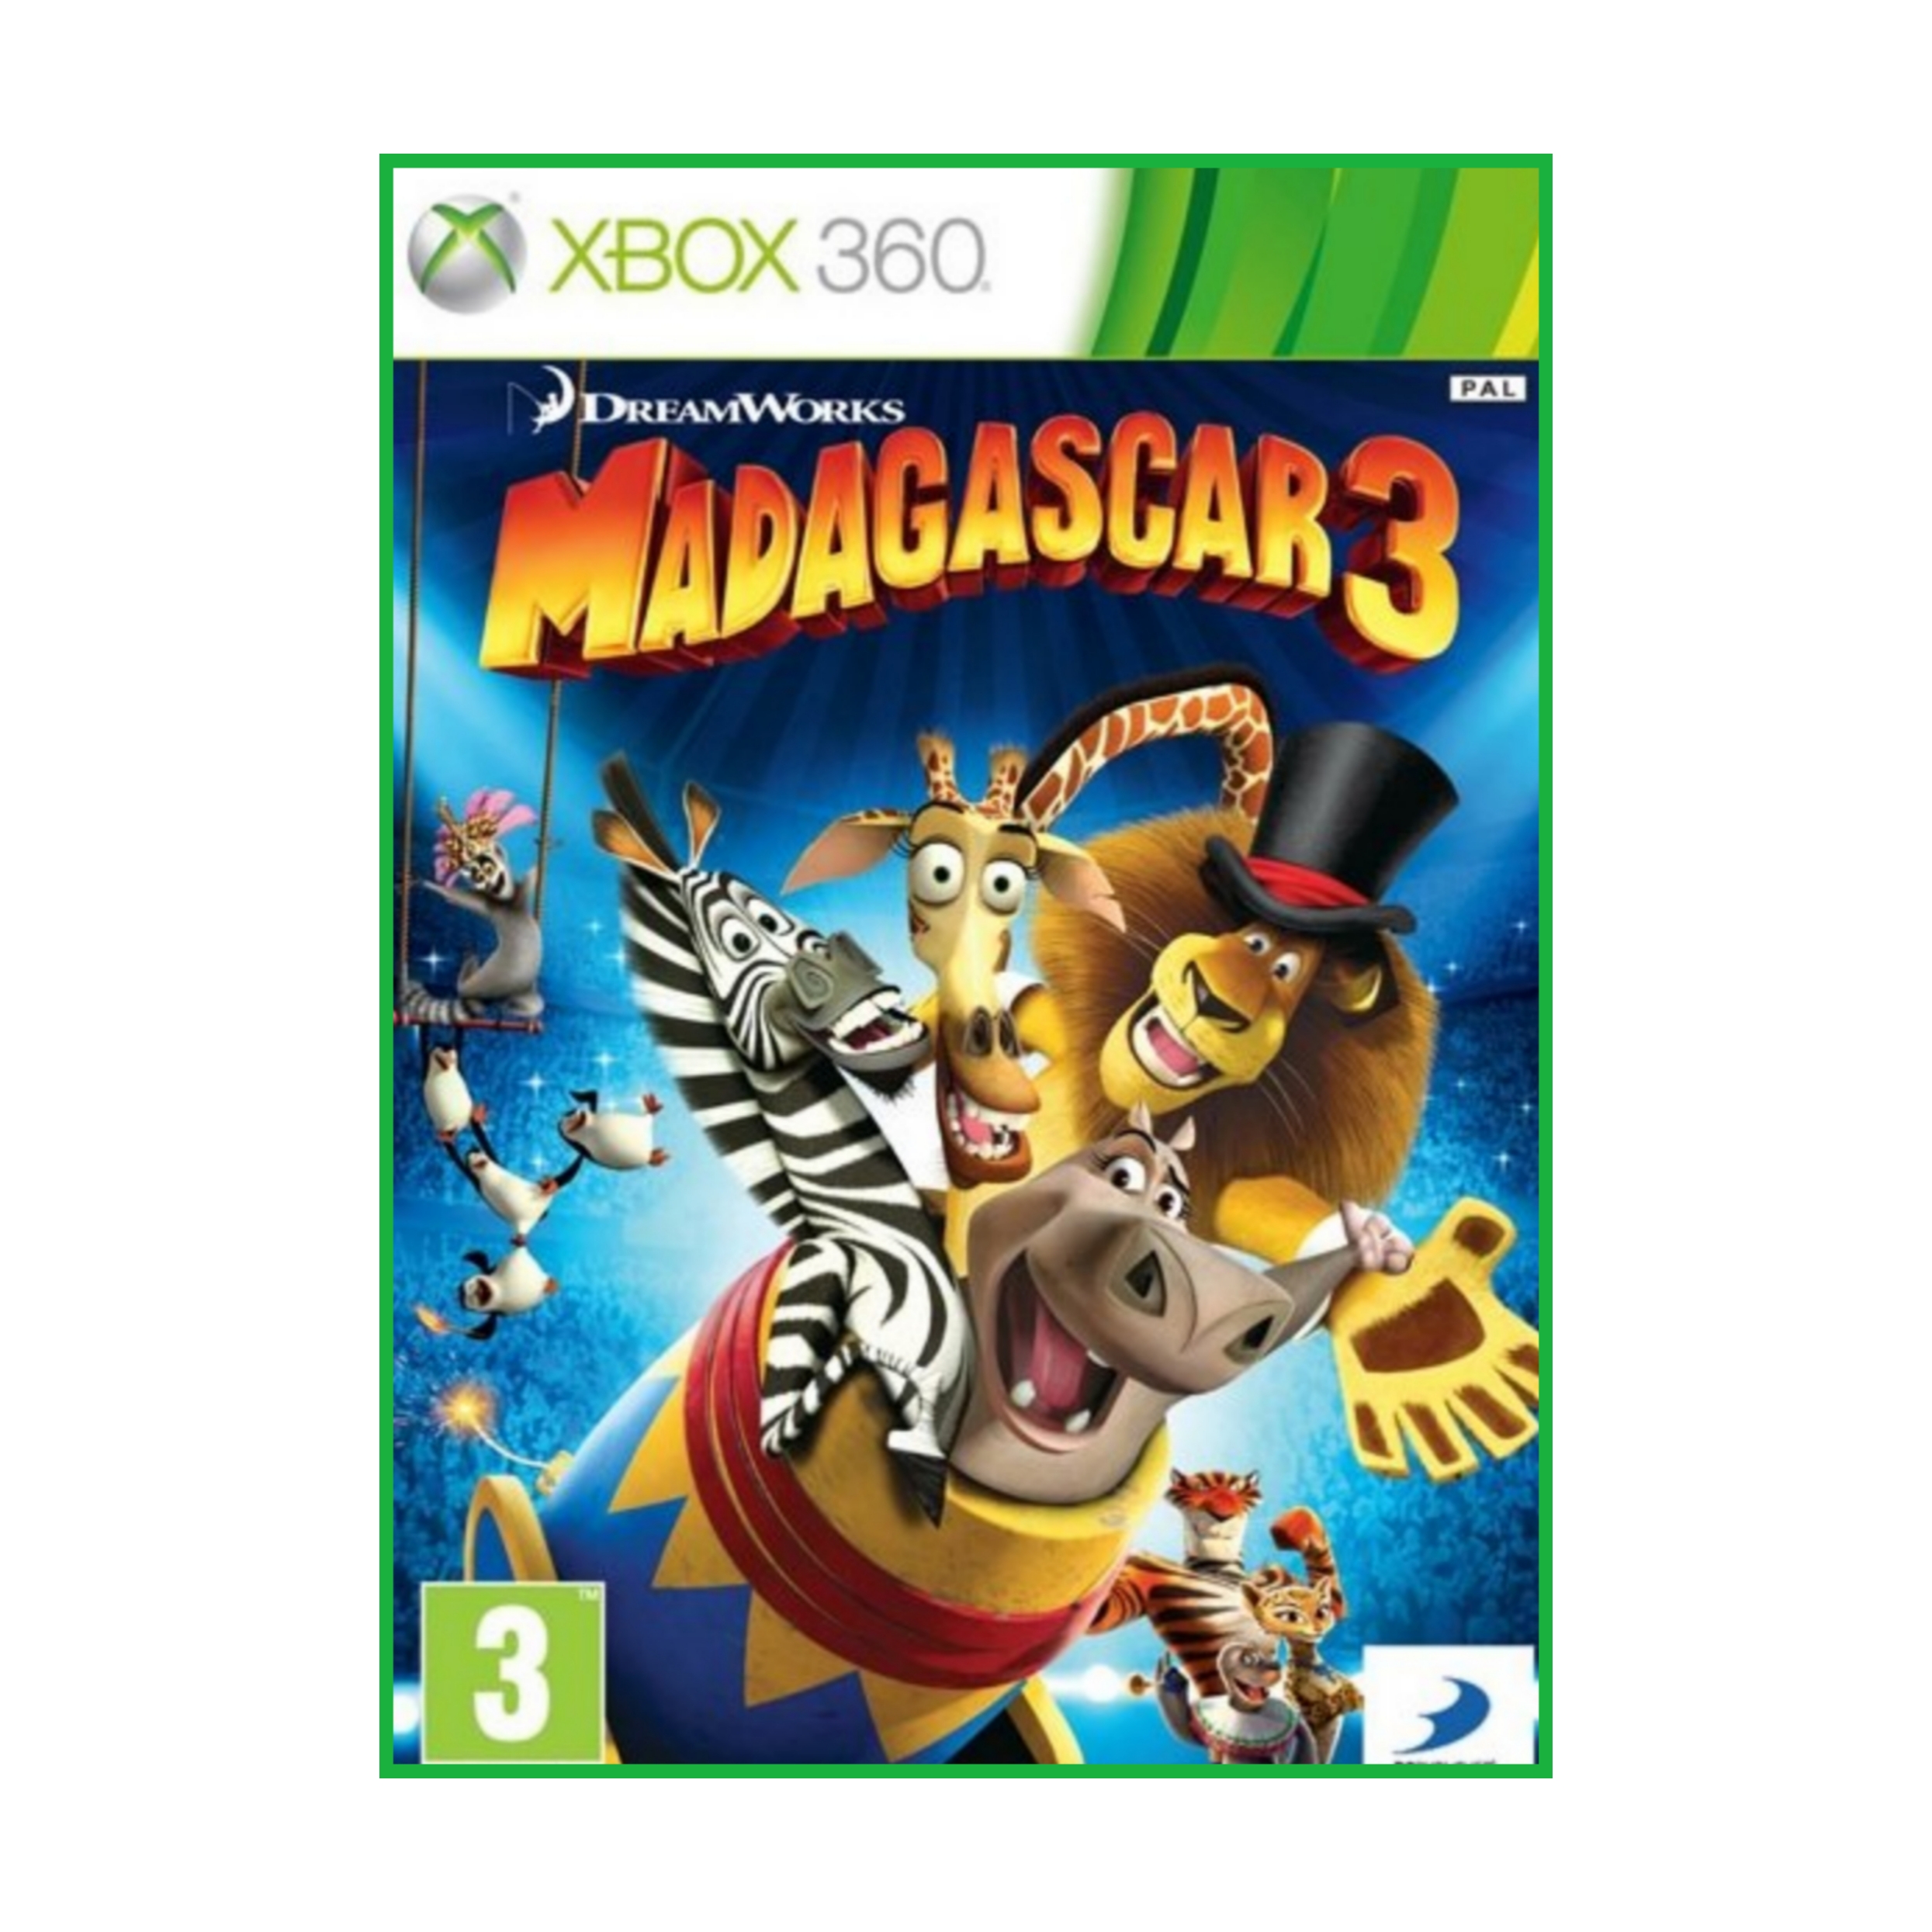 بازی Madagascarr 3 مخصوص xbox 360